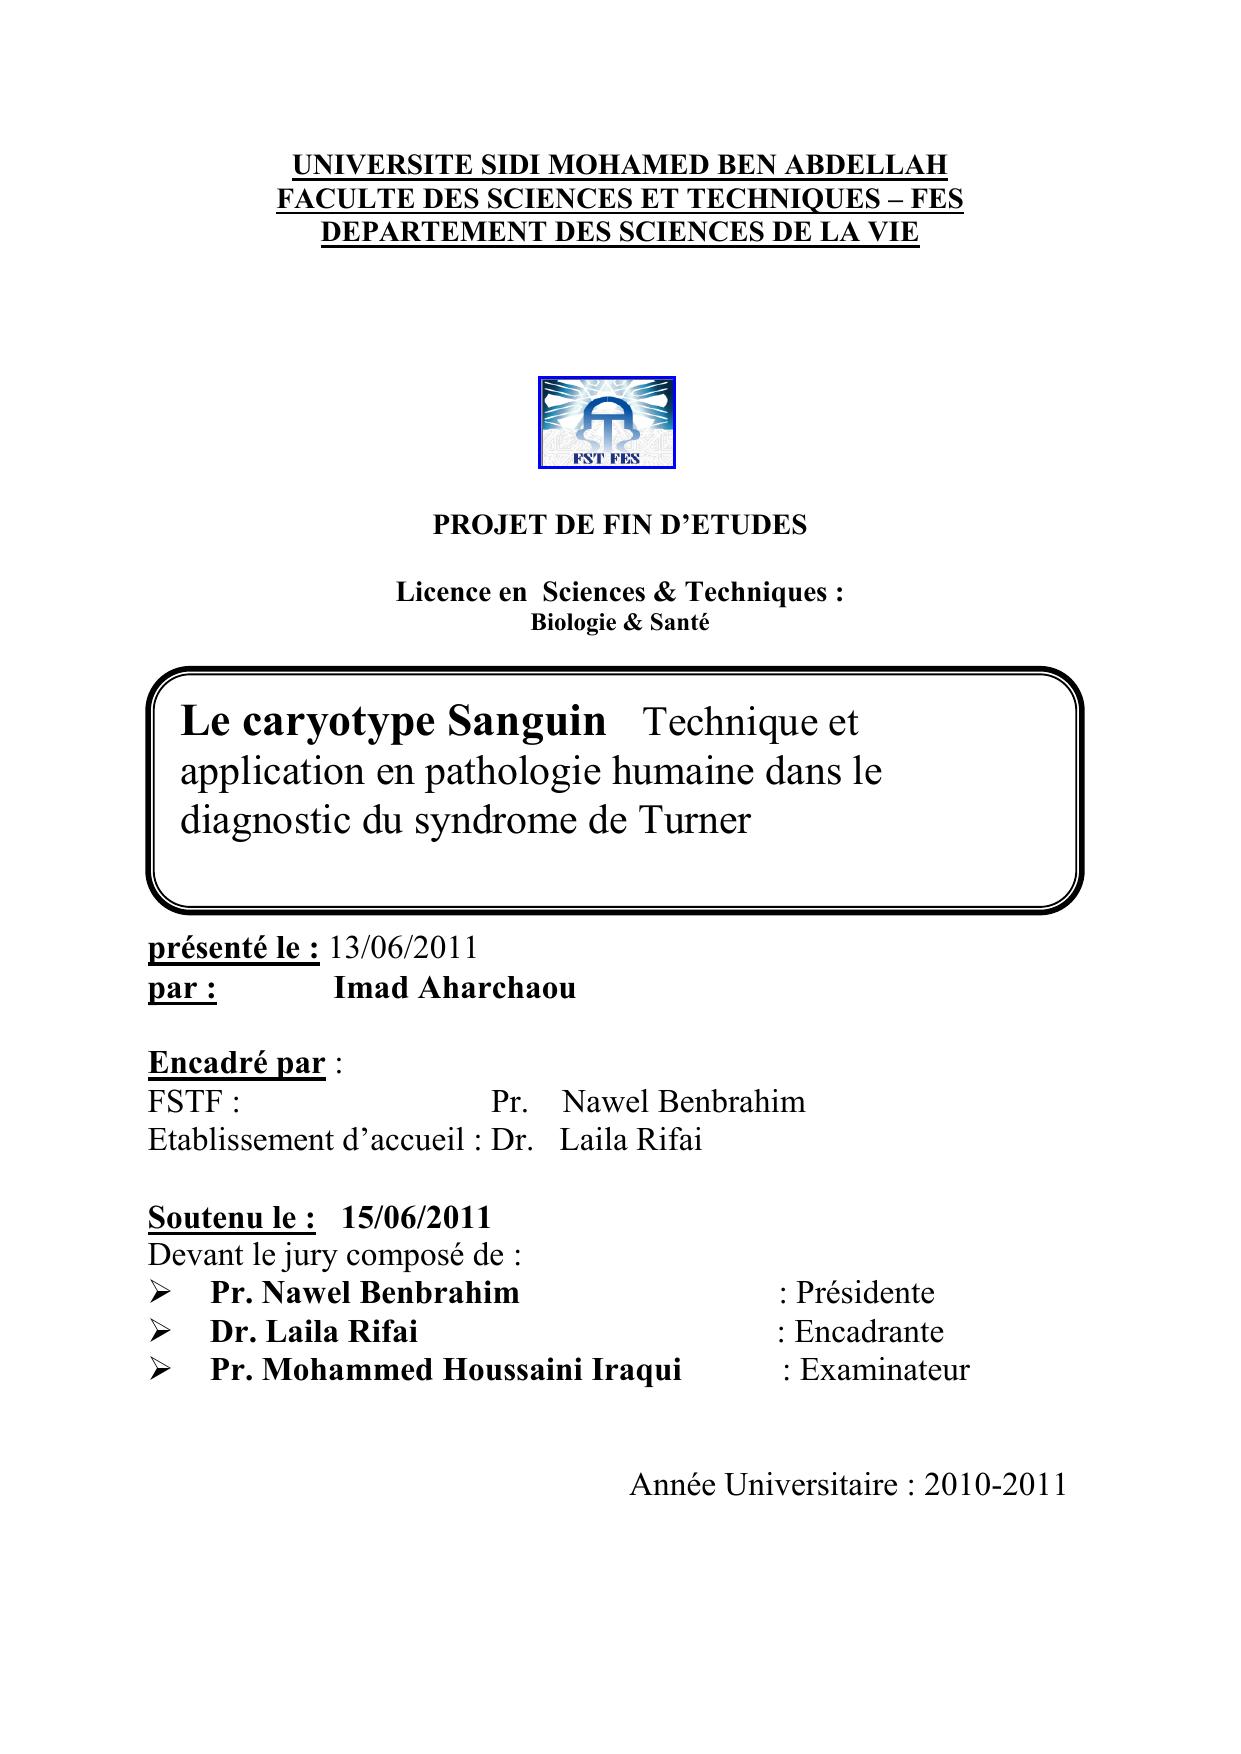 Le caryotype Sanguin Technique et application en pathologie humaine dans le diagnostic du syndrome de Turner